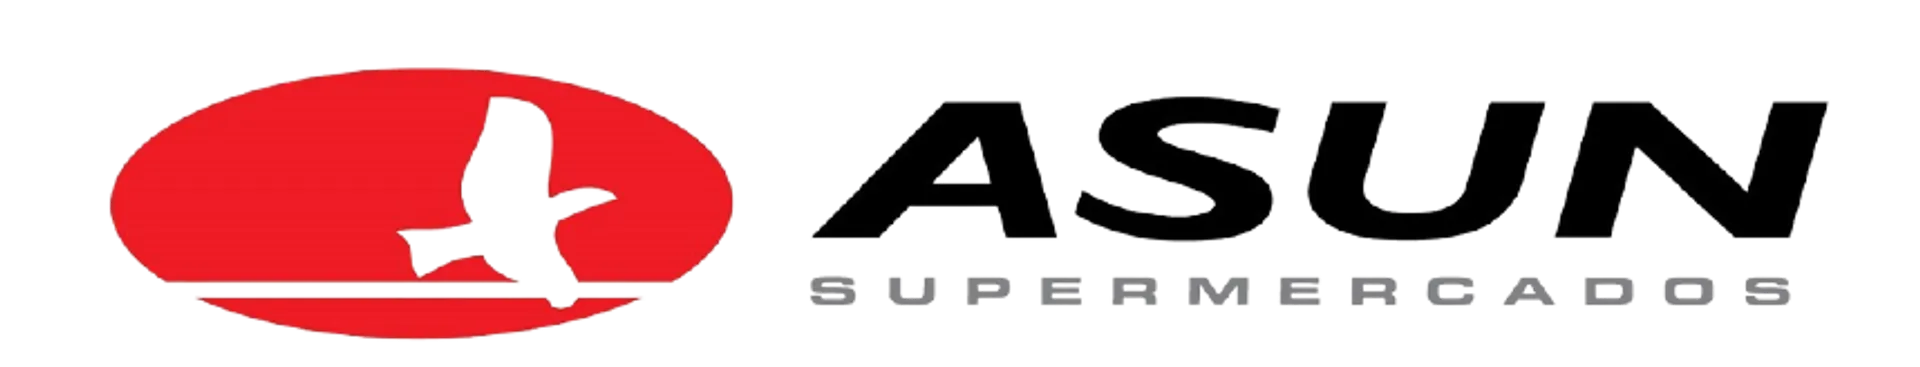 ASUN logo